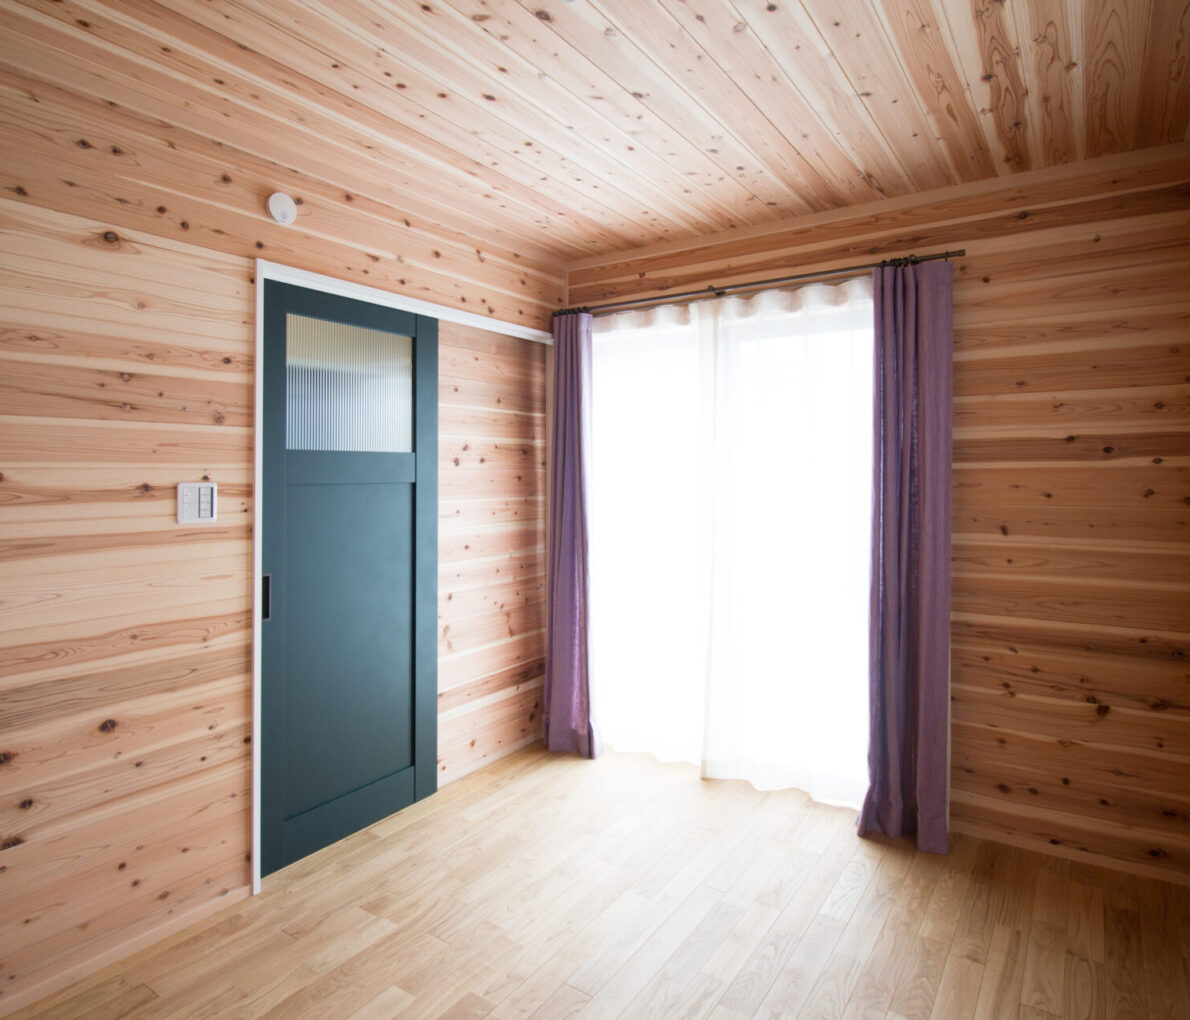 《寝室》ログハウス風の板張りの寝室は木の香りが落ち着きます